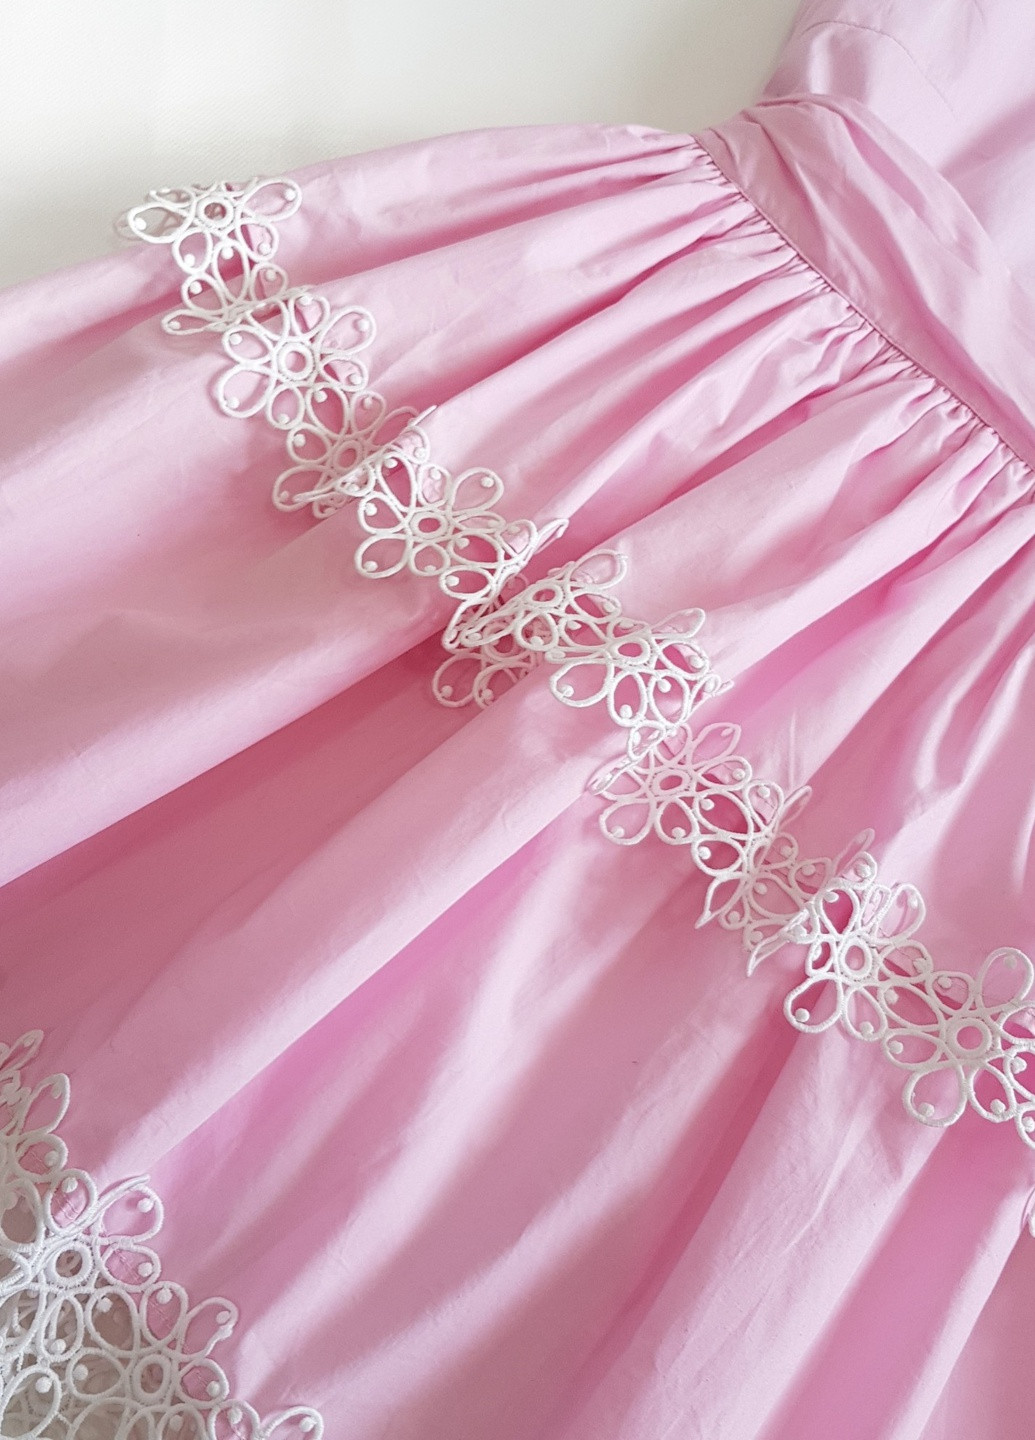 Летний женский летнее розовое платье с кружевом 4262 m (44) G&N однотонный